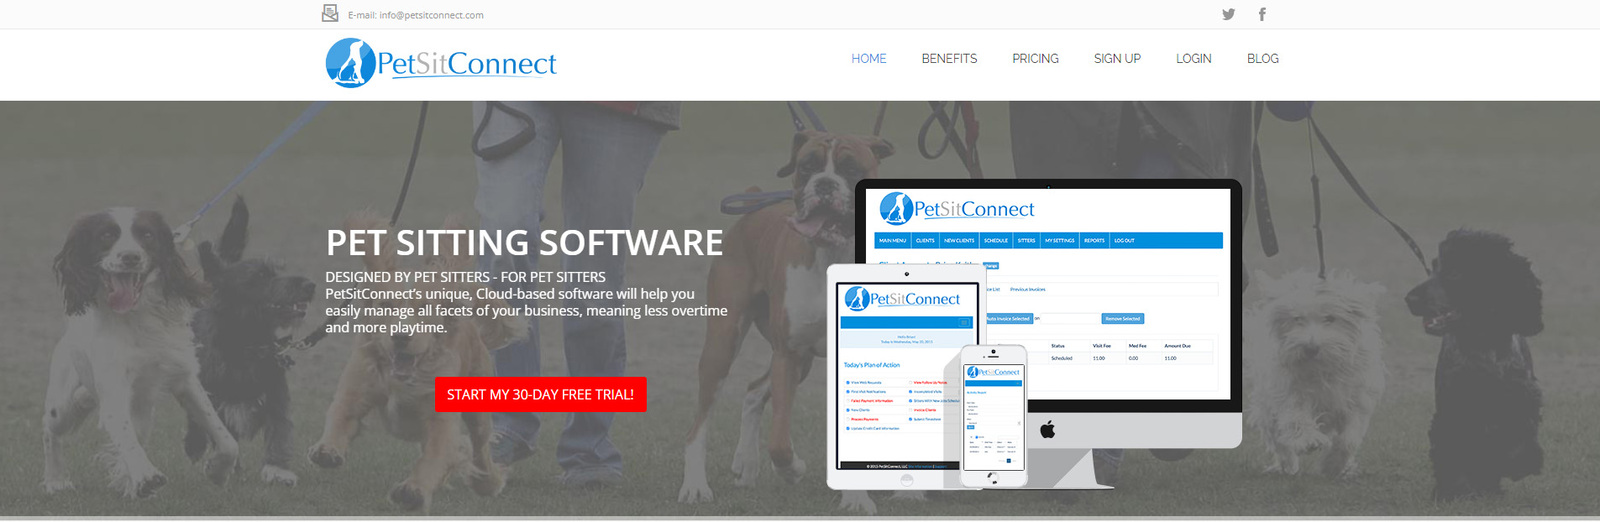 최고의 애완동물 돌보기 앱 옵션인 PetSitConnect의 스냅샷입니다.